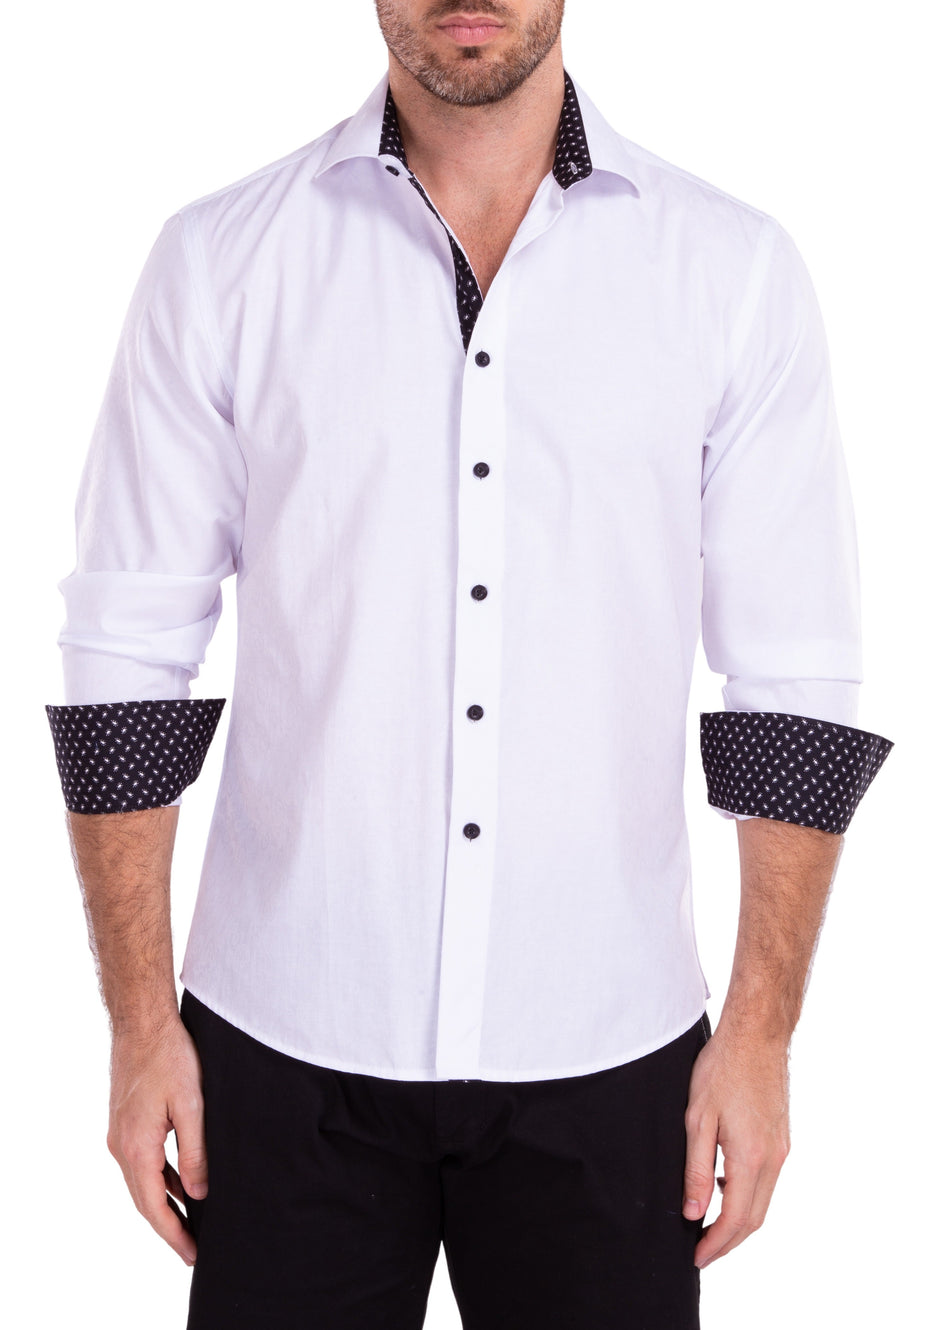 222222 - White Button Up Long Sleeve Dress Shirt